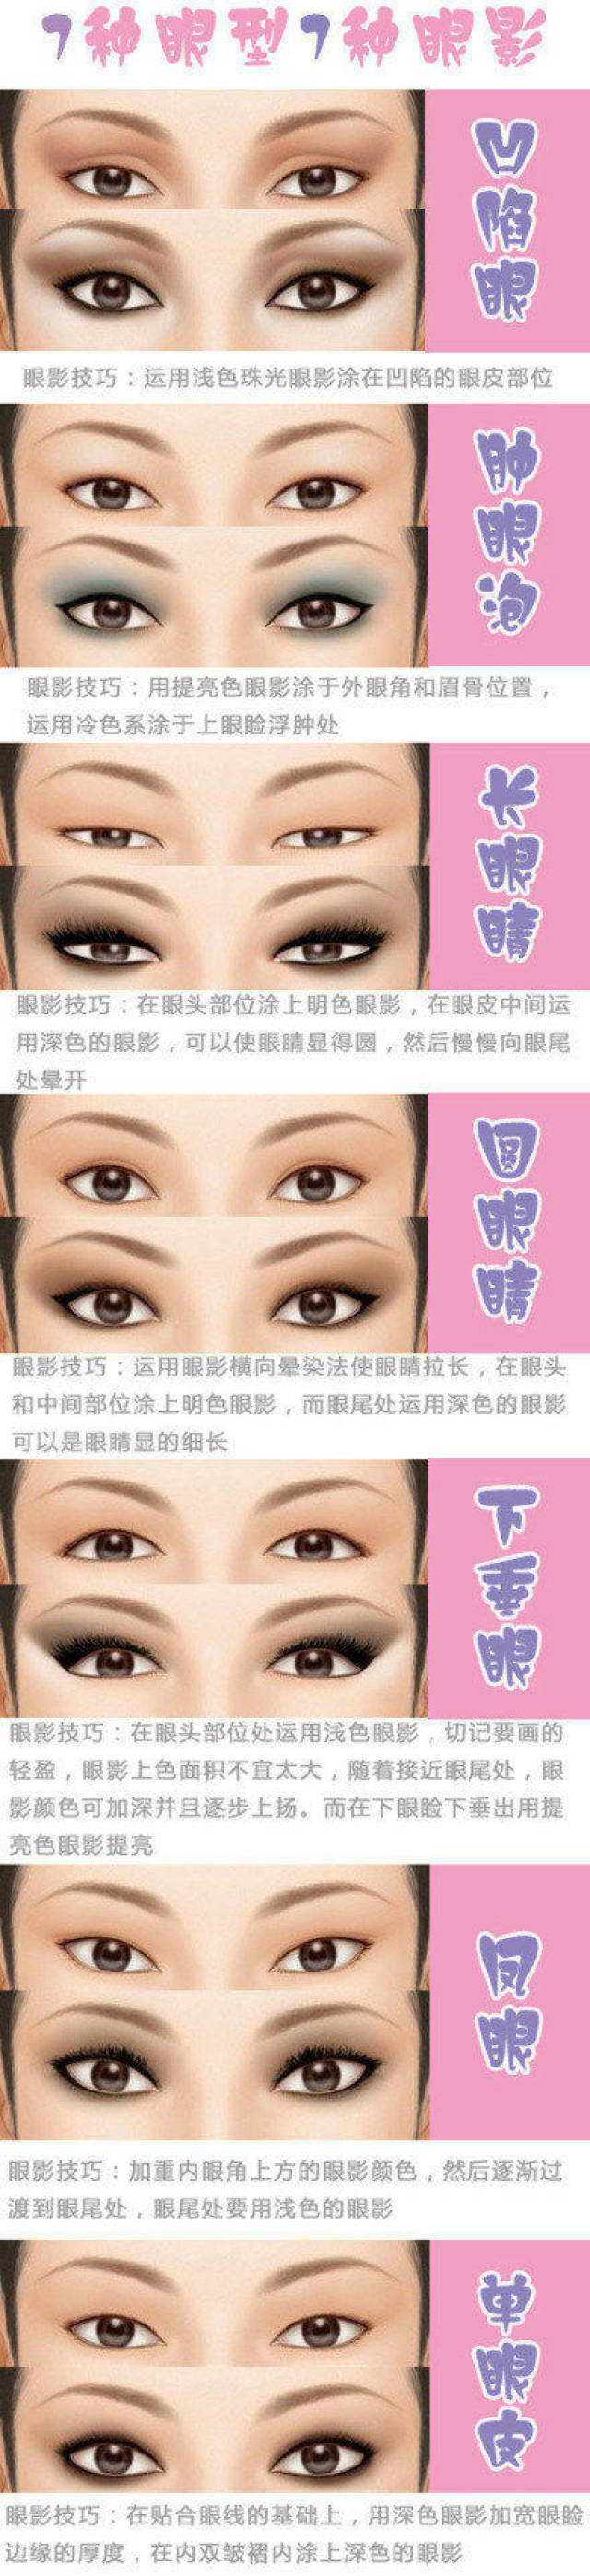 欧式眼影有增强双眼的深度及三维效果的作用,常见欧式法可分为两种